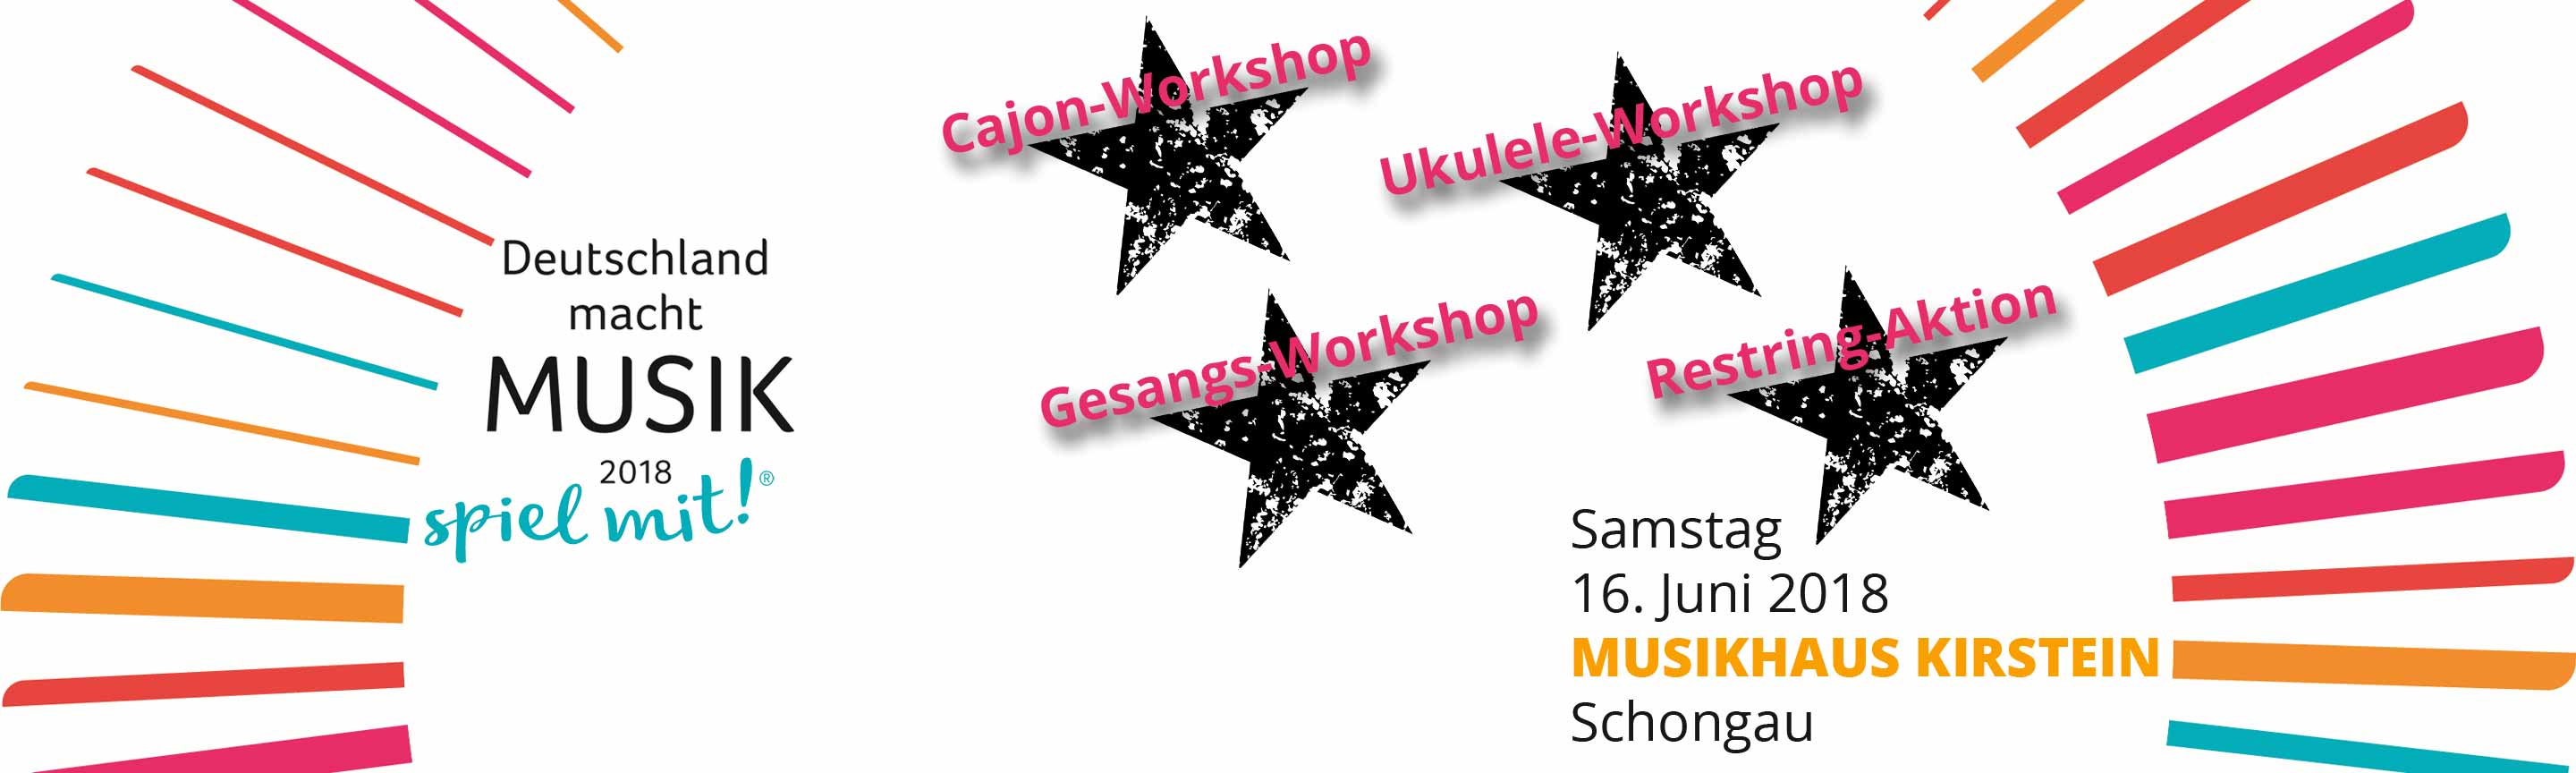 Deutschland macht Musik 2018. Workshops am bundesweiten Aktionstag im Musikhaus Kirstein.